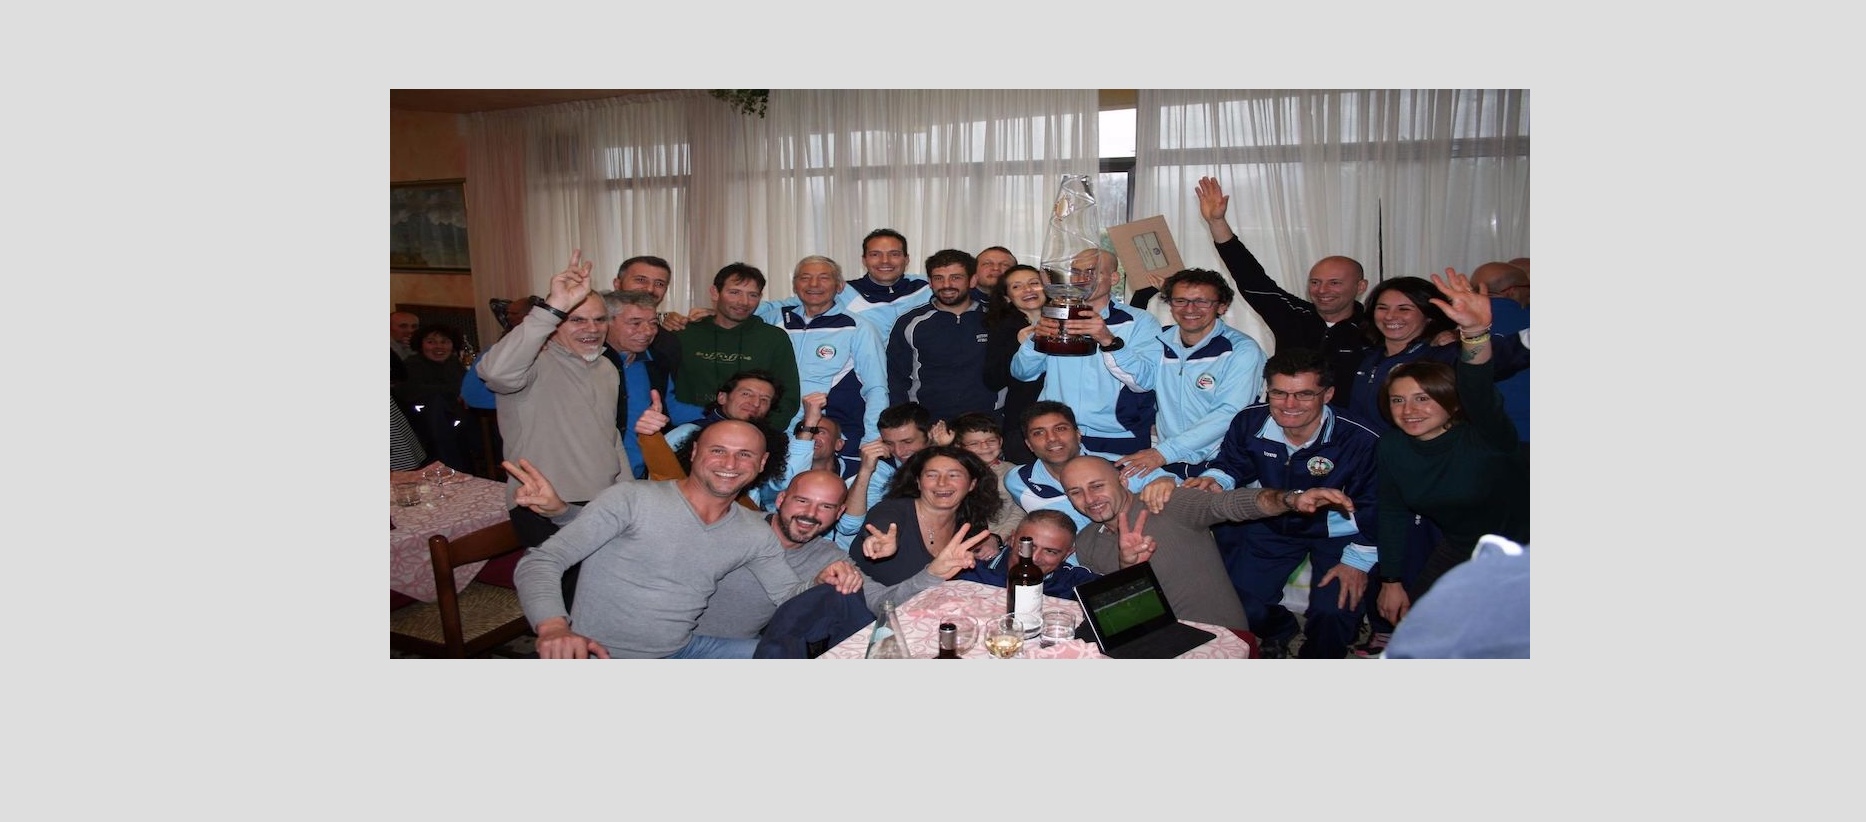 GHISA PER #RUNFOREMMA…& friends-Gruppo Sportivo Ghisa